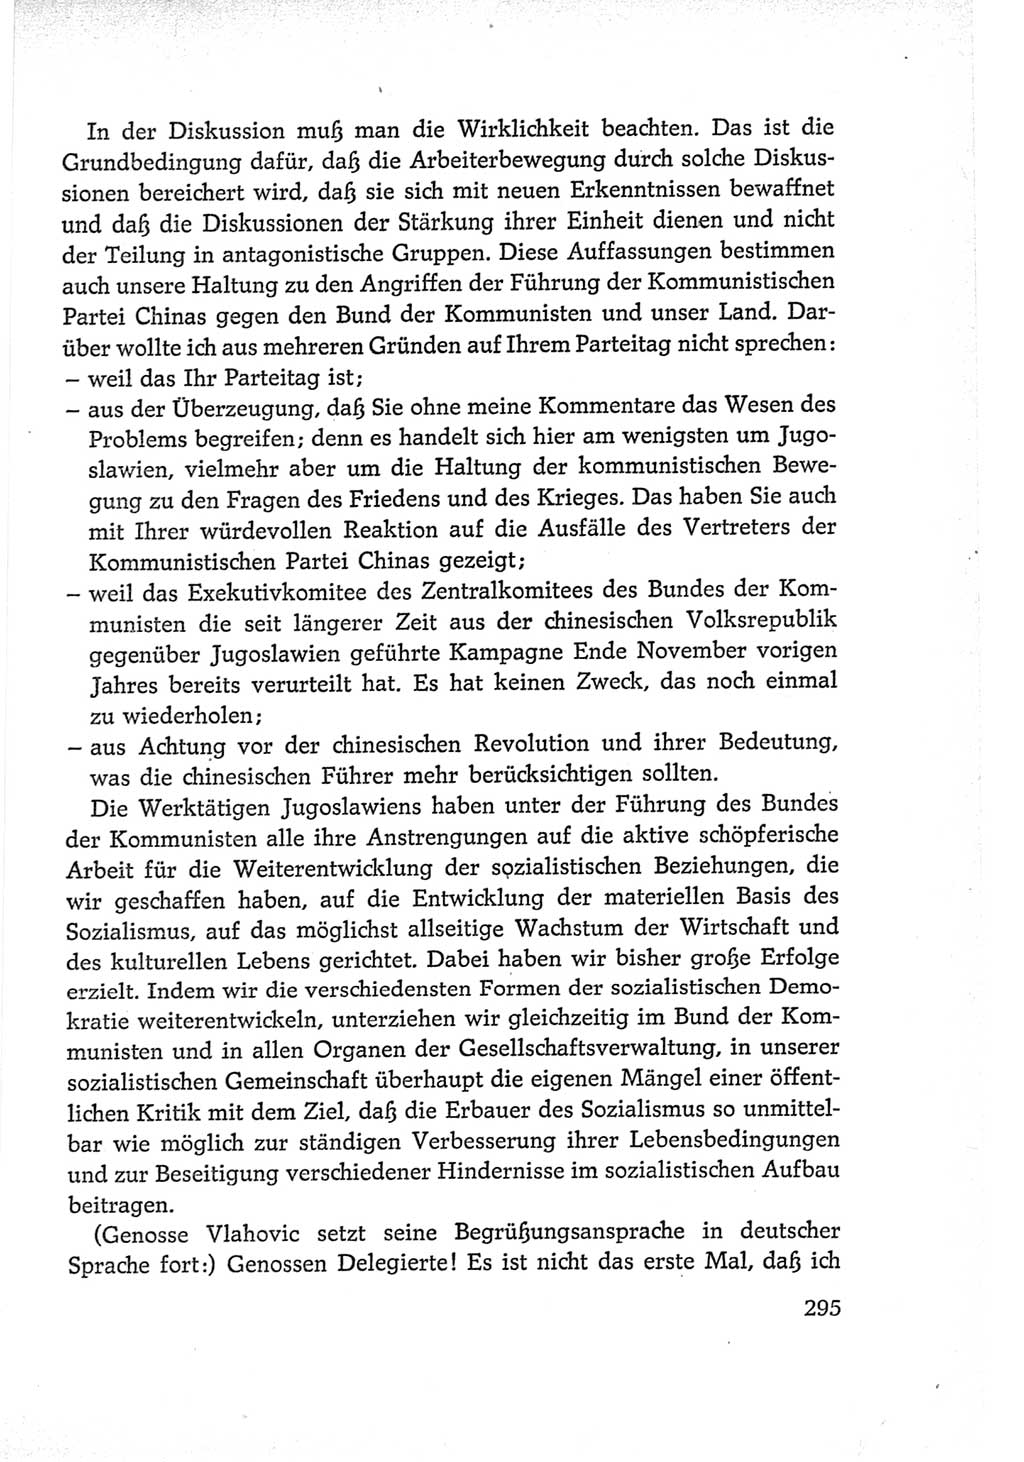 Protokoll der Verhandlungen des Ⅵ. Parteitages der Sozialistischen Einheitspartei Deutschlands (SED) [Deutsche Demokratische Republik (DDR)] 1963, Band Ⅱ, Seite 295 (Prot. Verh. Ⅵ. PT SED DDR 1963, Bd. Ⅱ, S. 295)